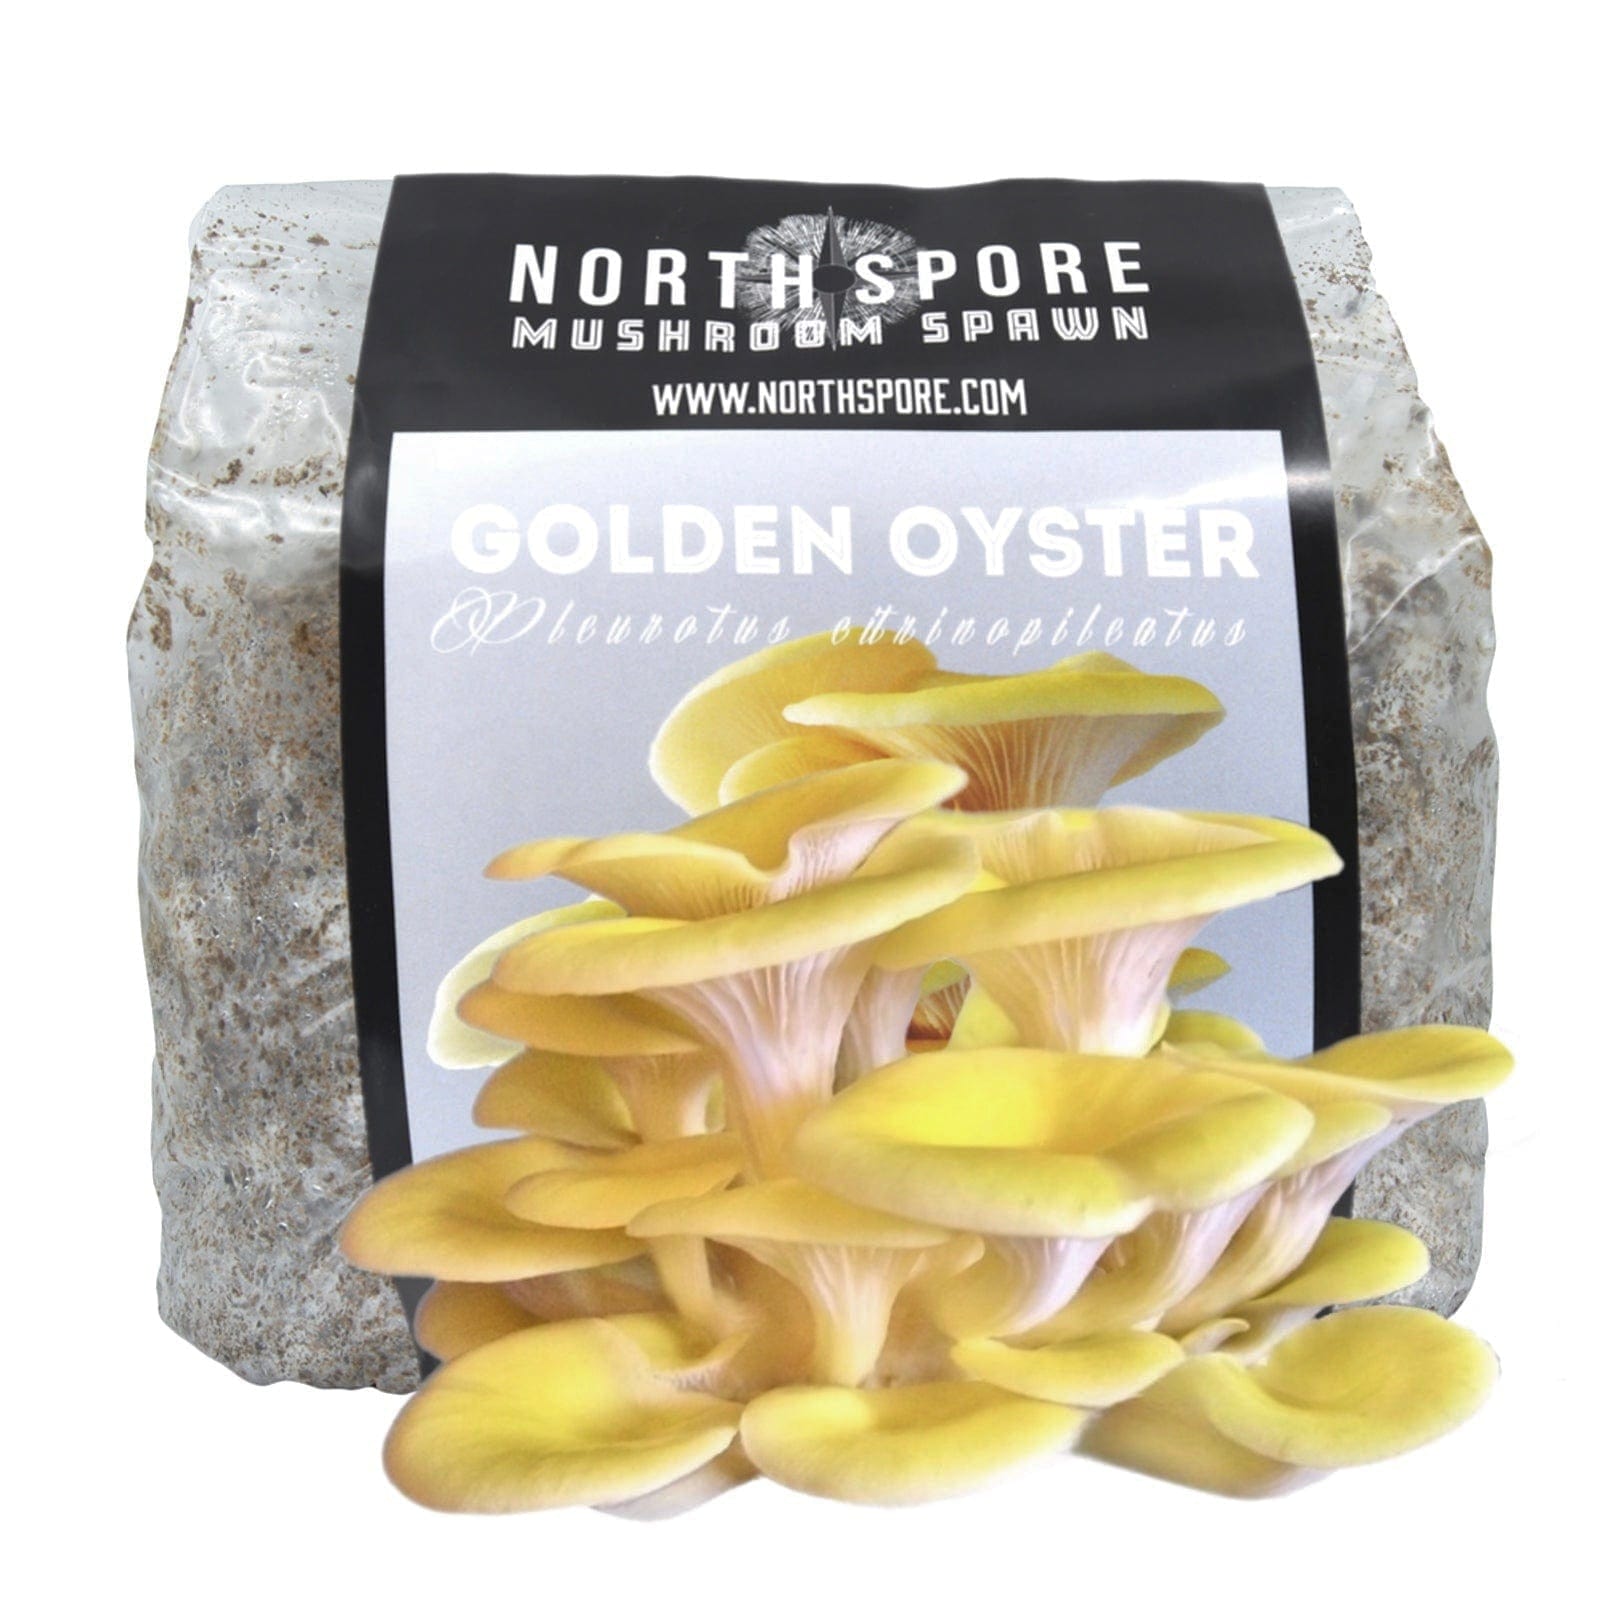 https://northspore.com/cdn/shop/products/sawdust-spawn-golden-oyster-mushroom-sawdust-spawn-29455662973030.jpg?v=1671848704